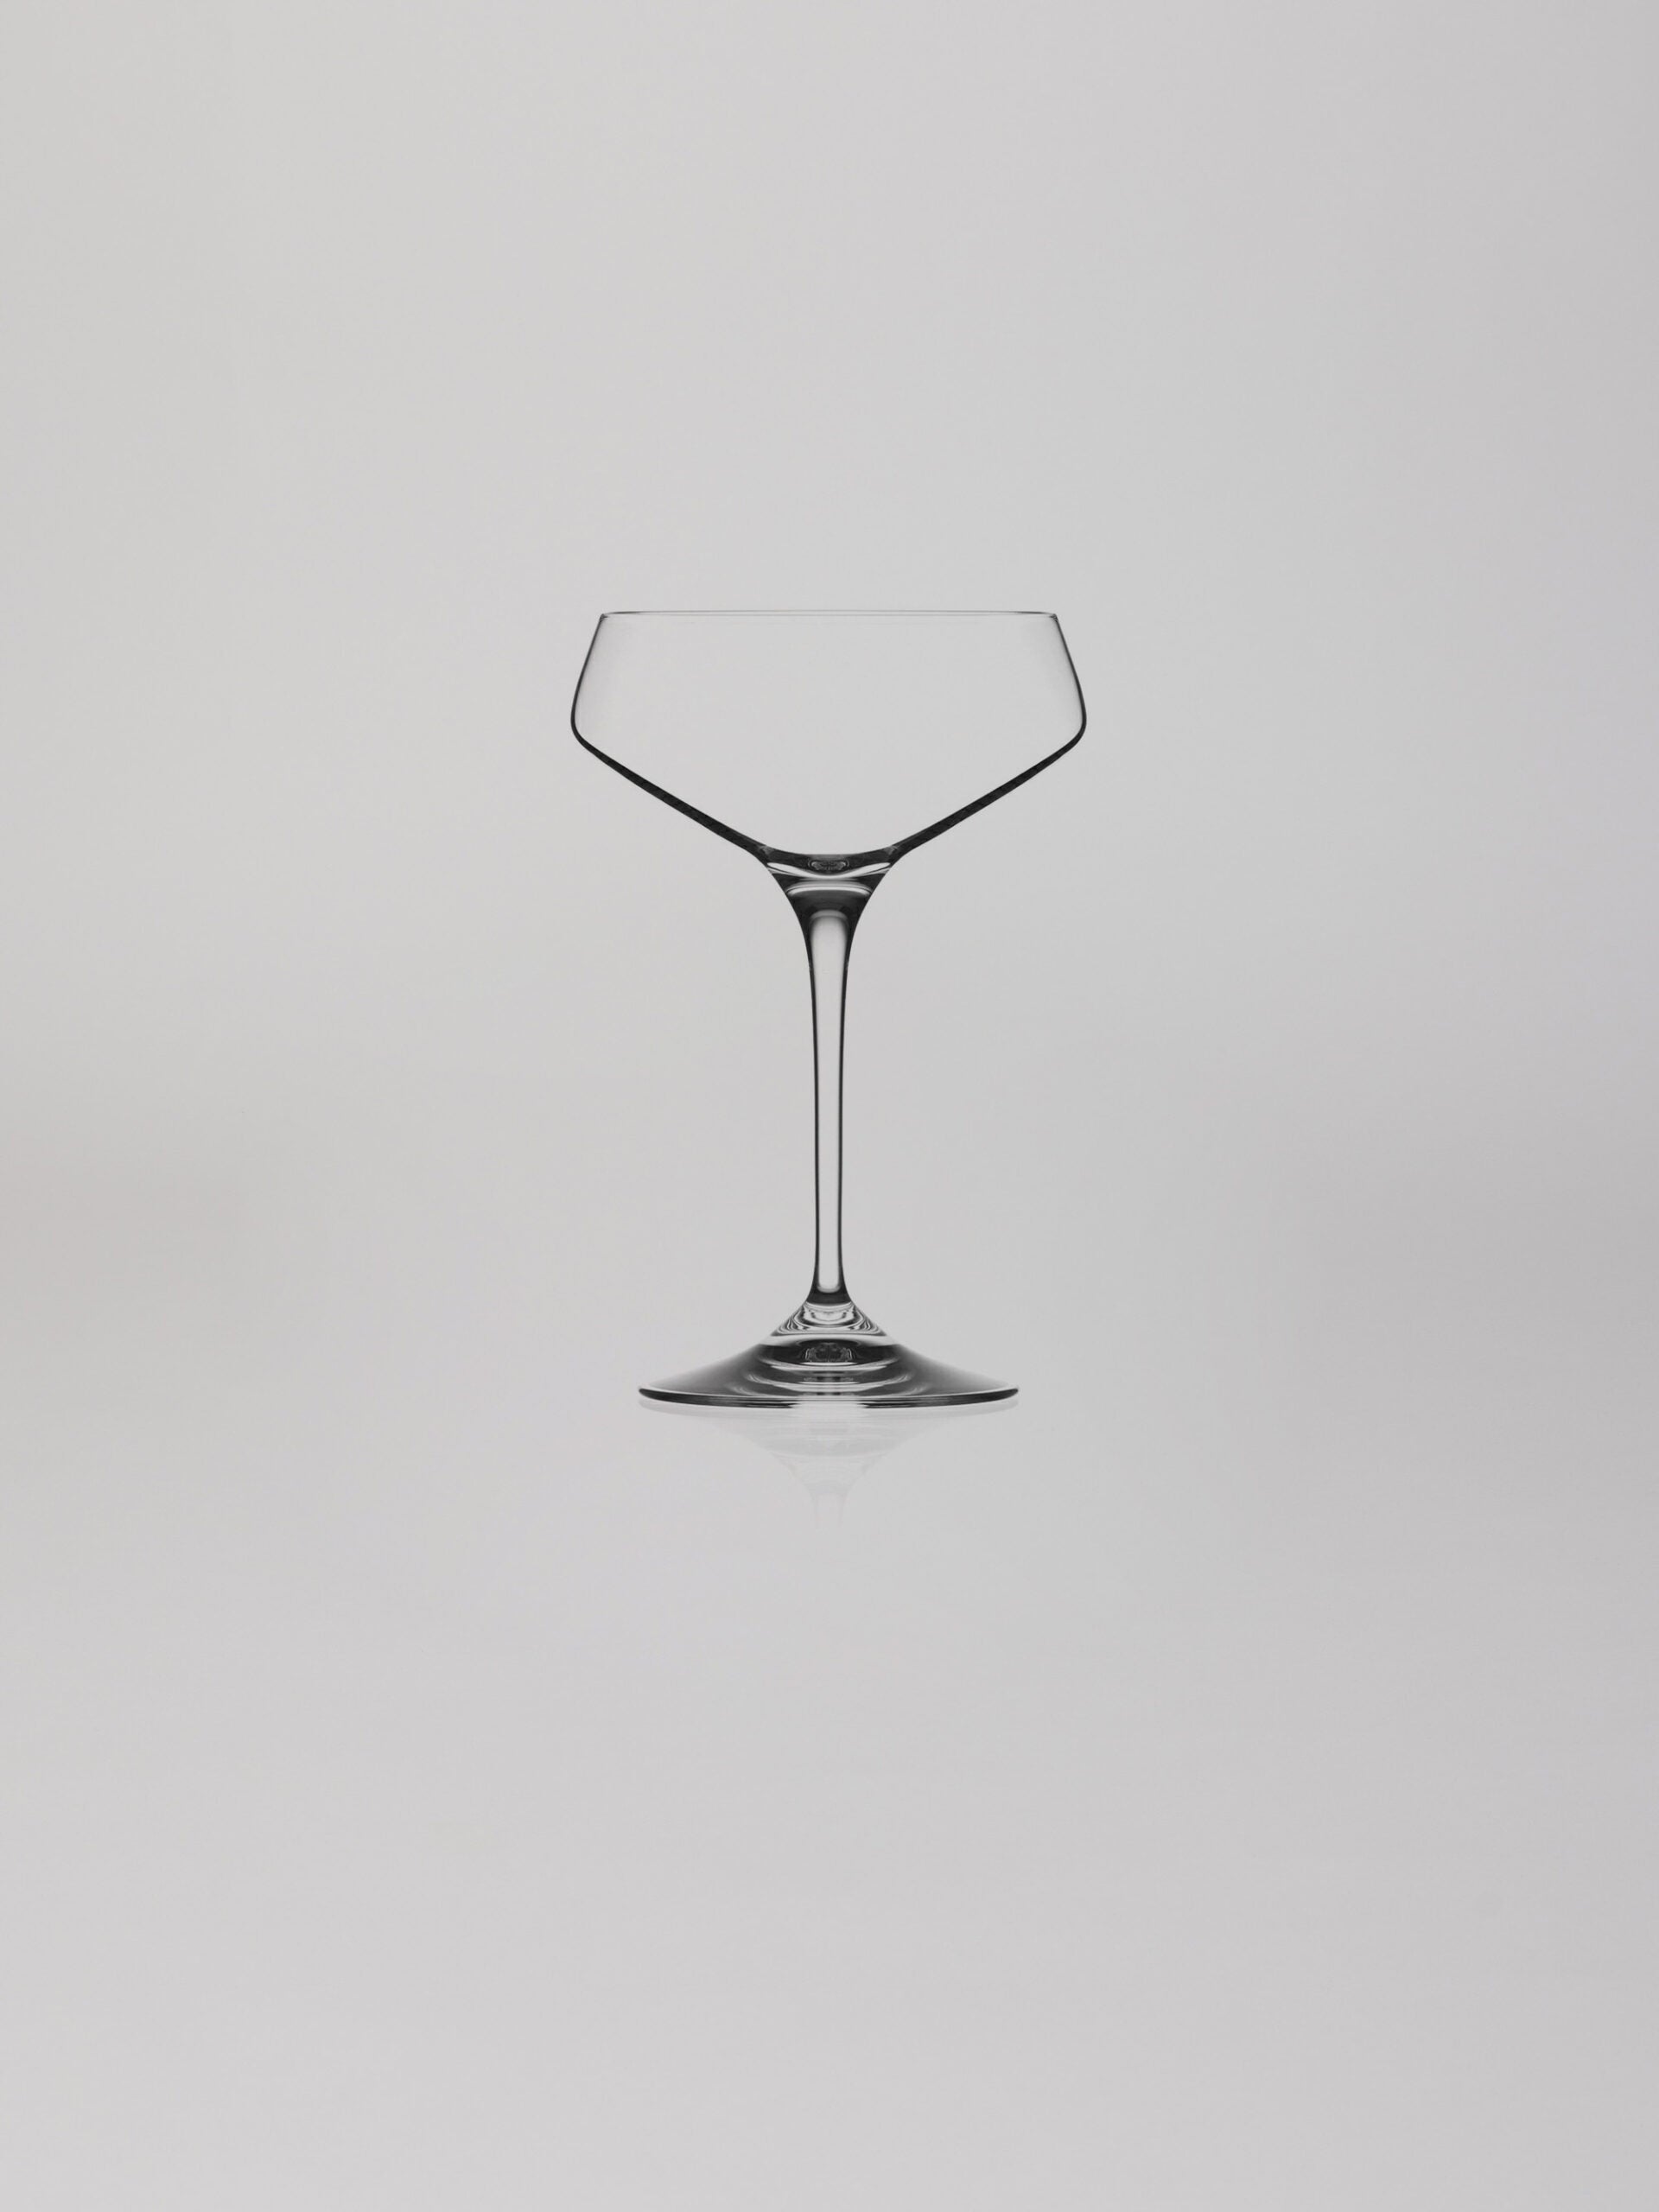 כוס שמפניה על רקע אפור בהיר